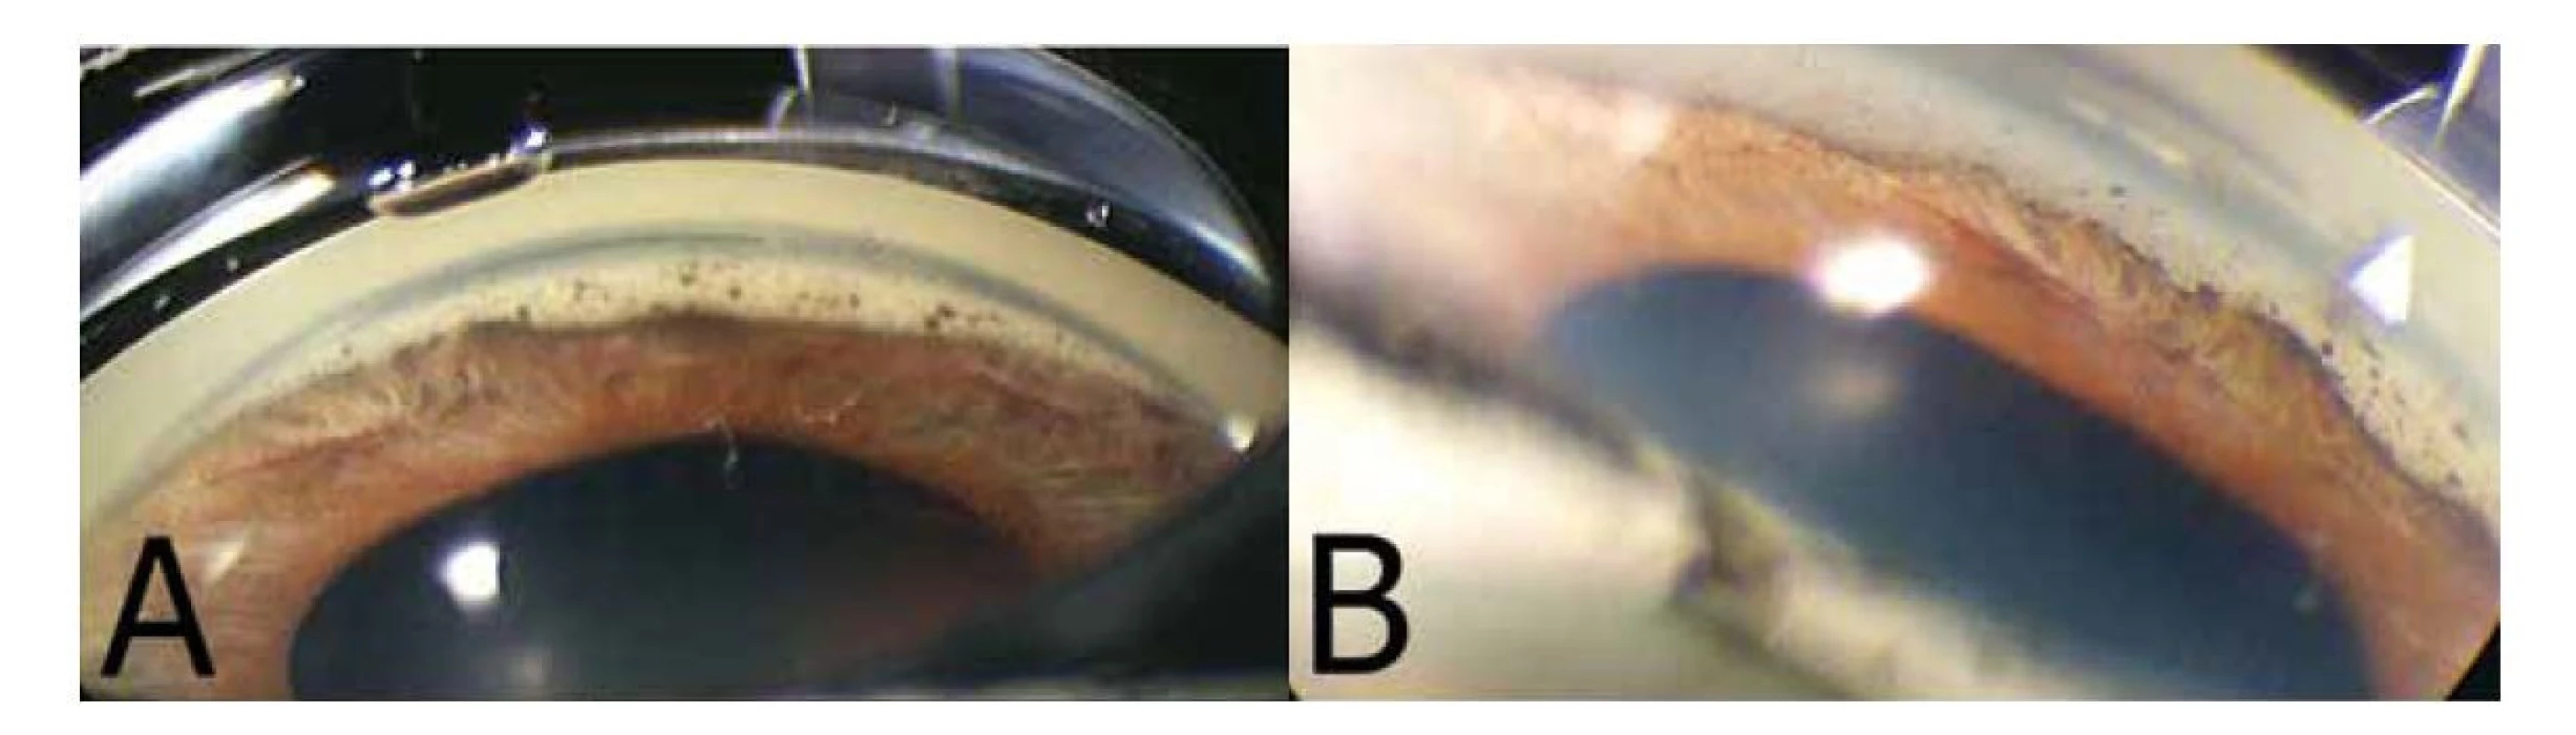 Gonioskopická fotografie pravého oka znázorňující výraznou disperzi pigmentu a přední synechie v komorovém úhlu